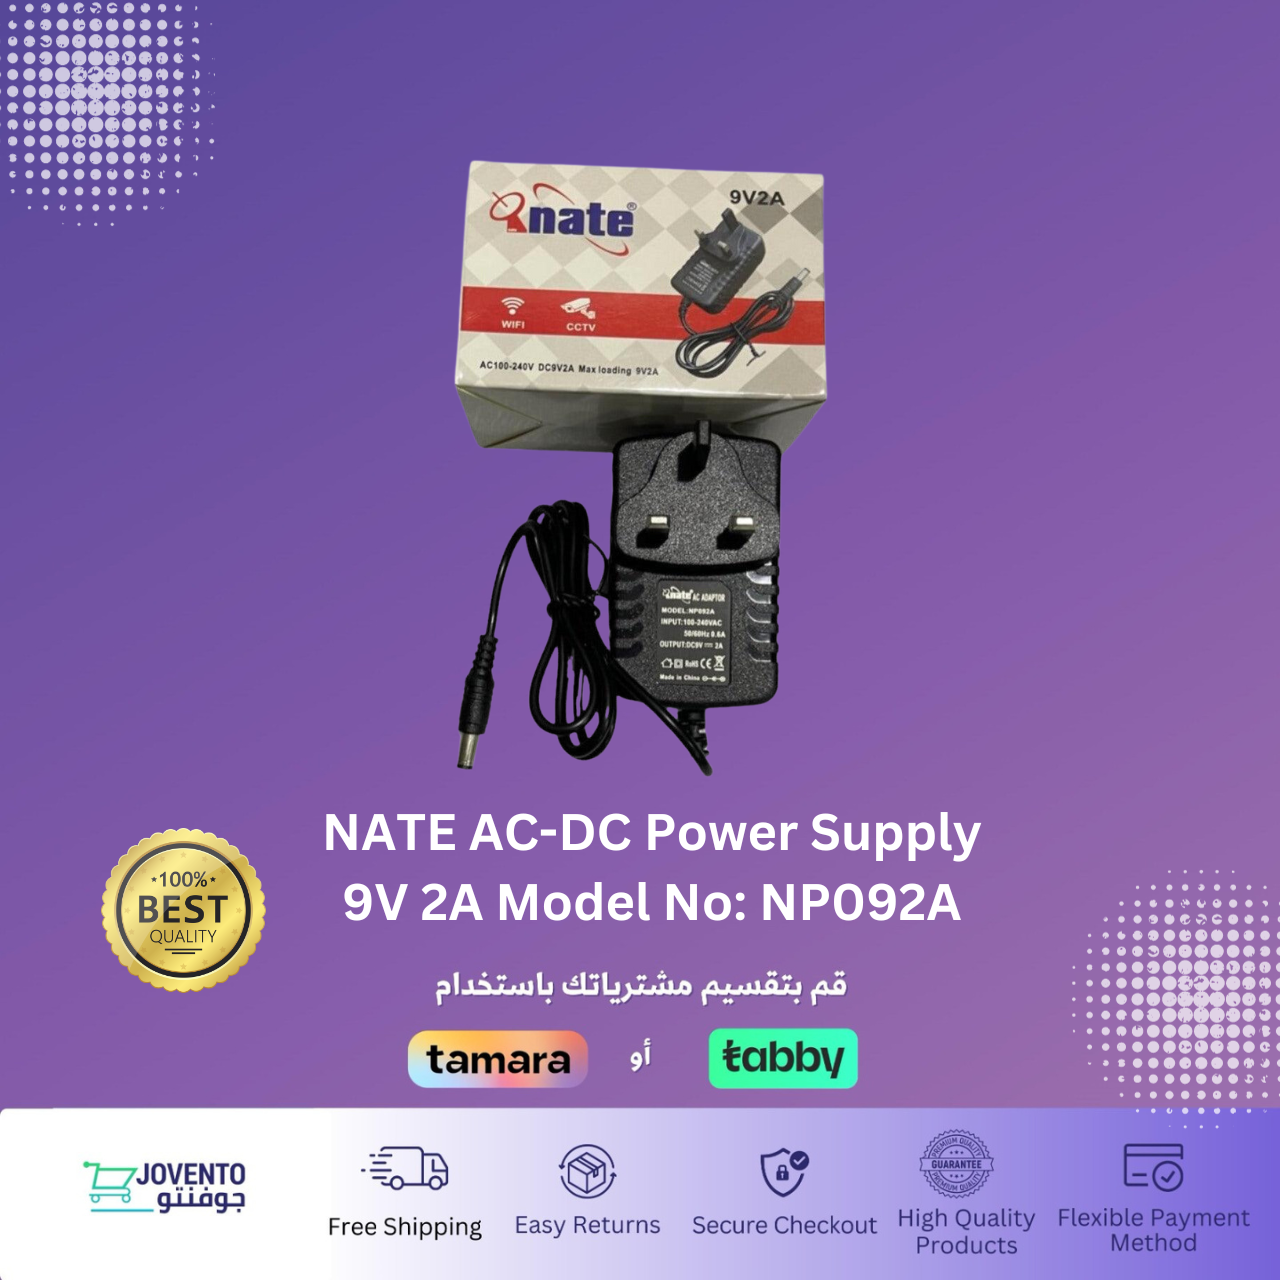 NATE AC-DC Power Supply 9V 2A Model No: NP092A